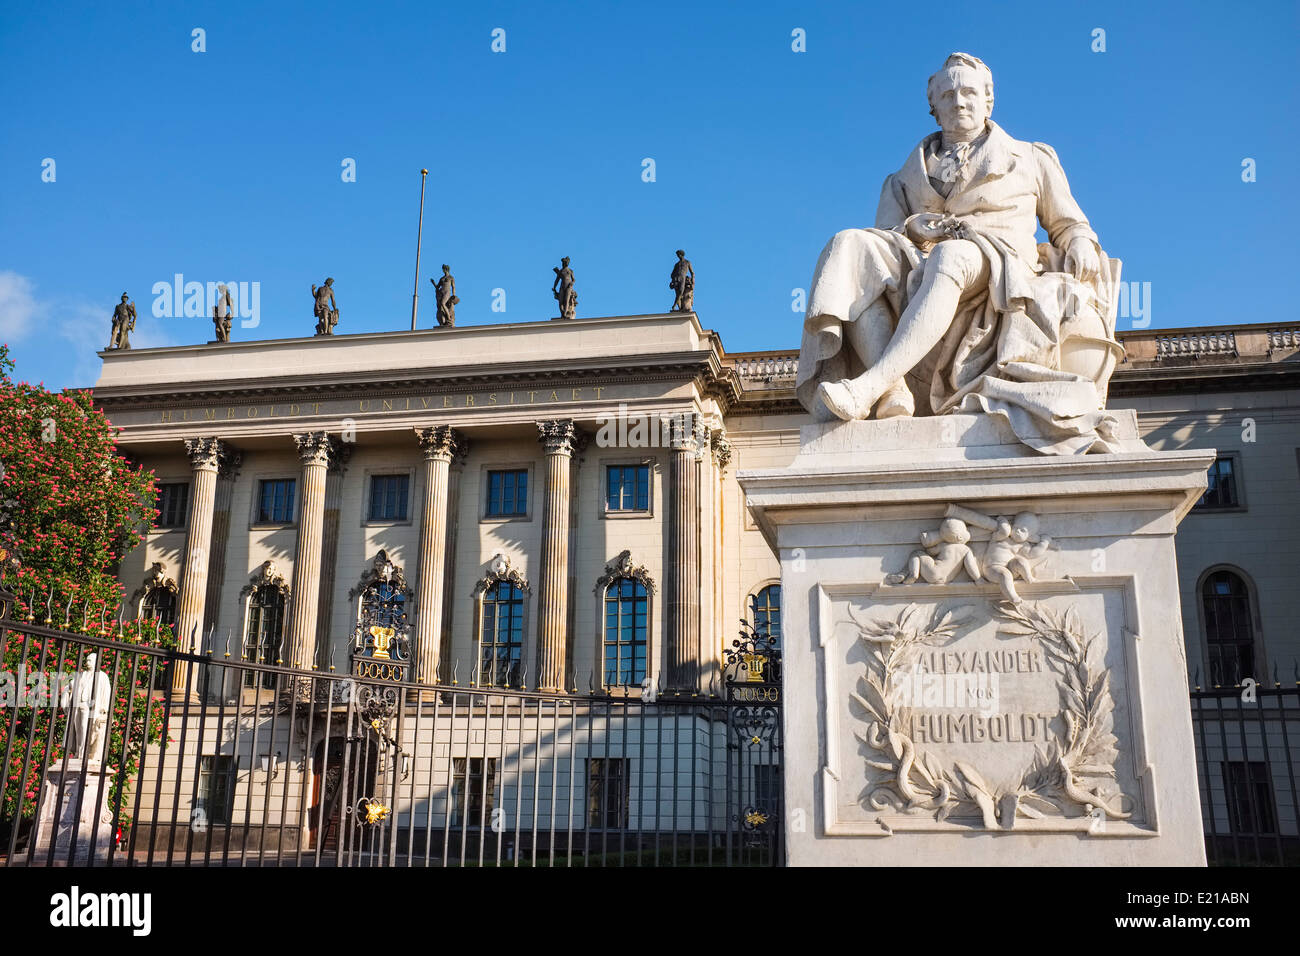 Memorial to Alexander von Humboldt, Unter den Linden boulevard, Berlin, Germany Stock Photo